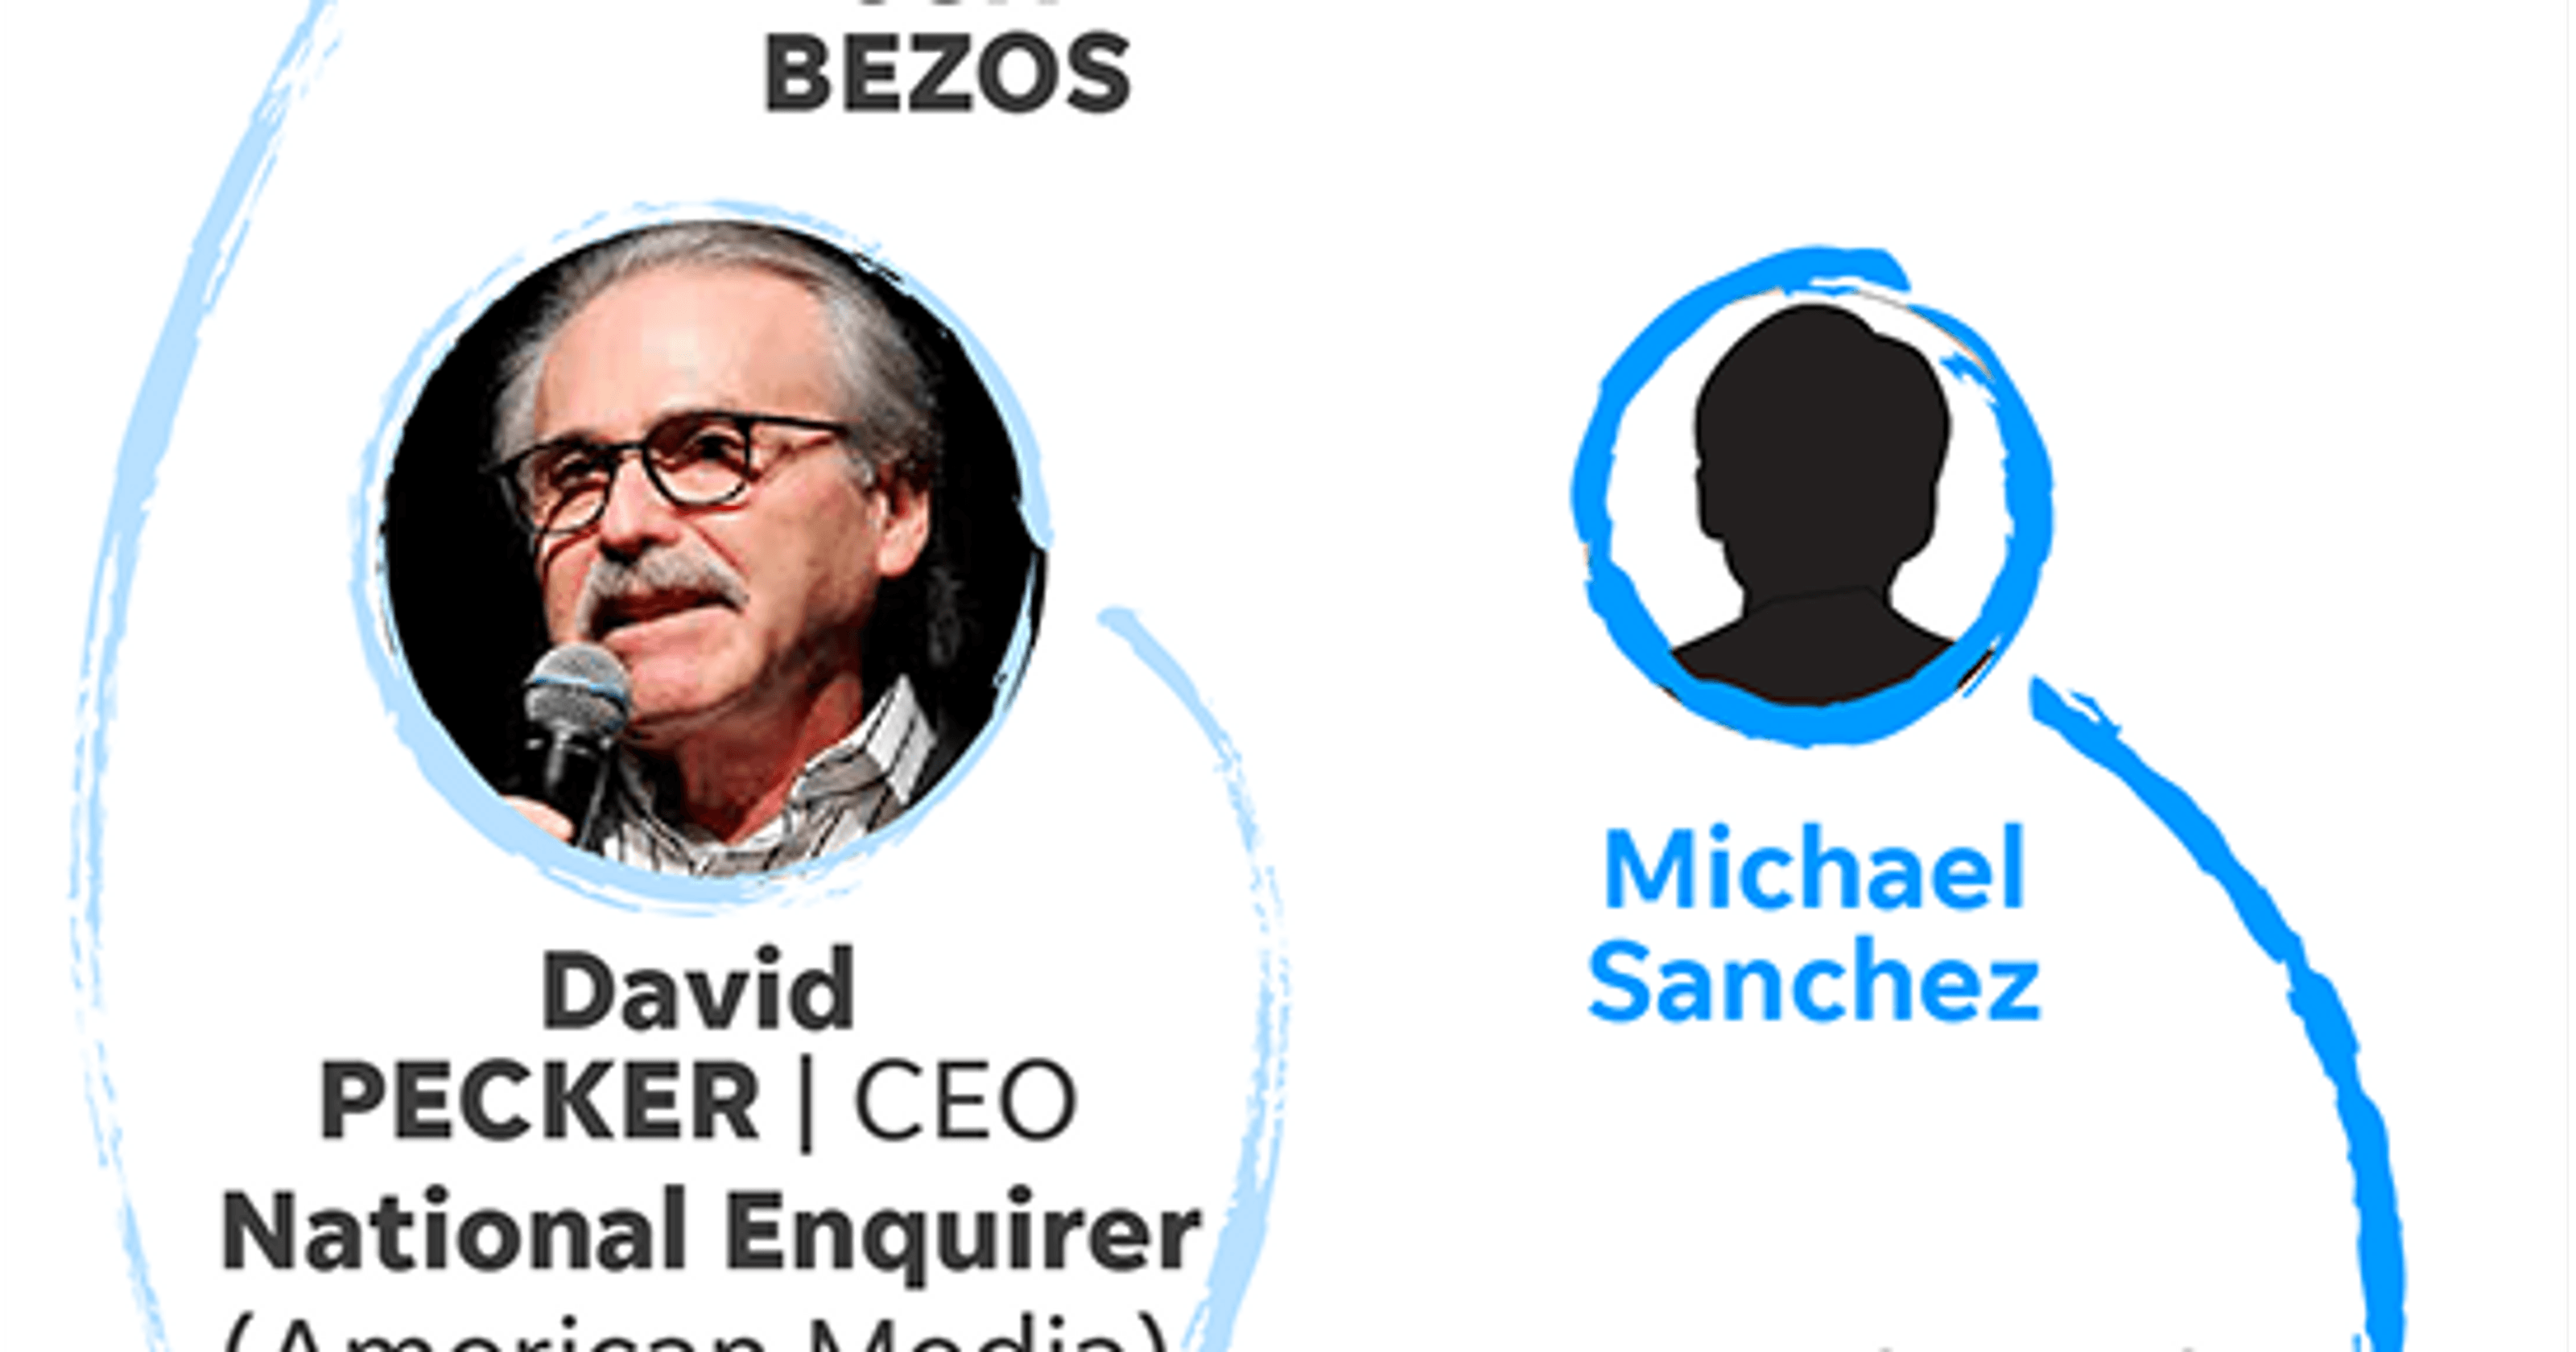 National Enquirer Logo - NJ investors concerned about National Enquirer allegations by Bezos